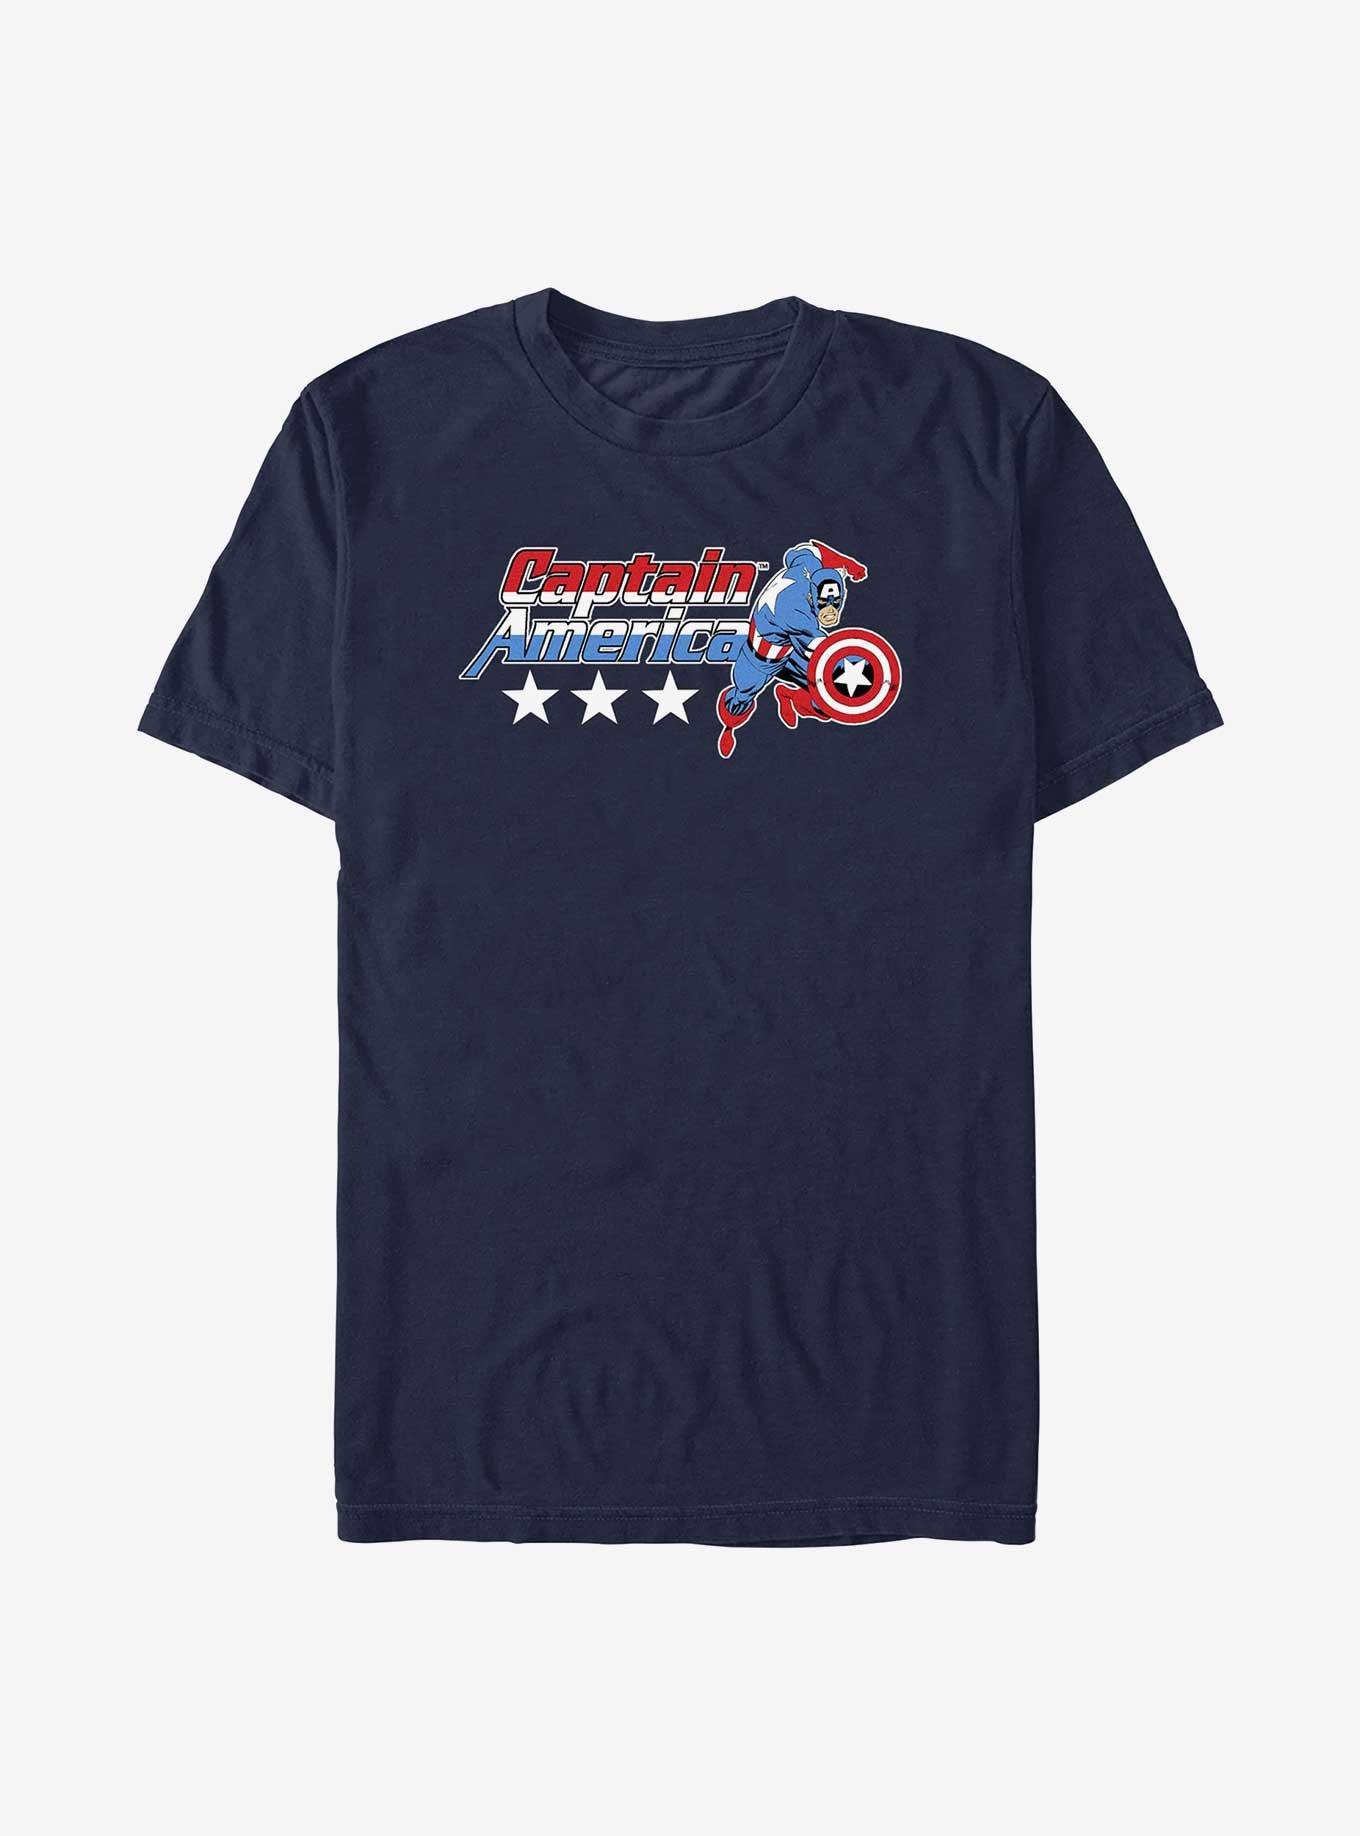 Marvel Captain America All Star T-Shirt